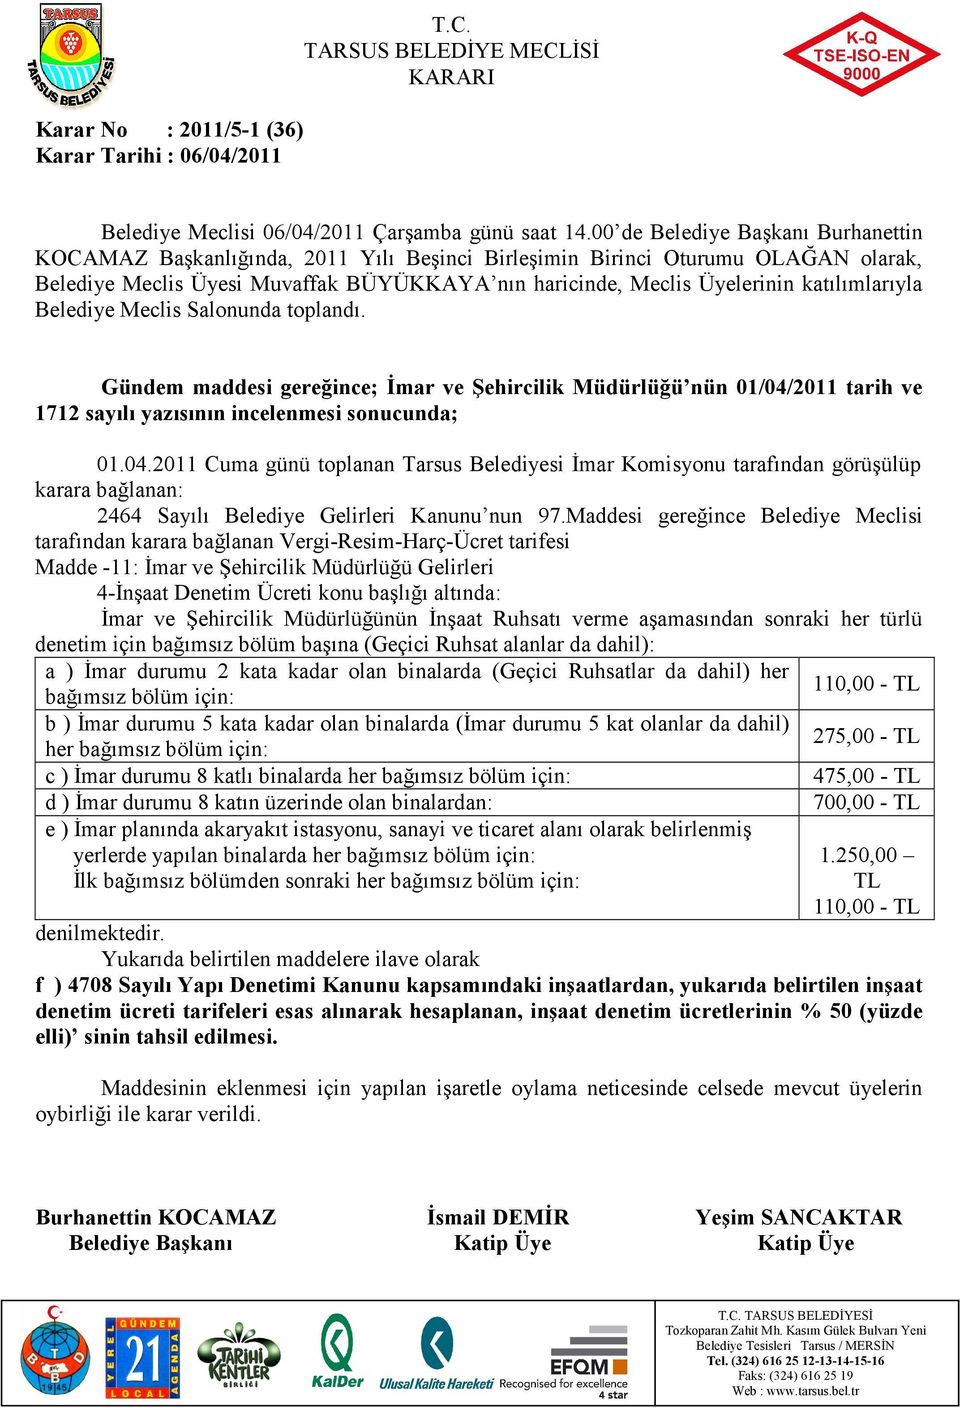 2011 Cuma günü toplanan Tarsus Belediyesi Đmar Komisyonu tarafından görüşülüp karara bağlanan: 2464 Sayılı Belediye Gelirleri Kanunu nun 97.